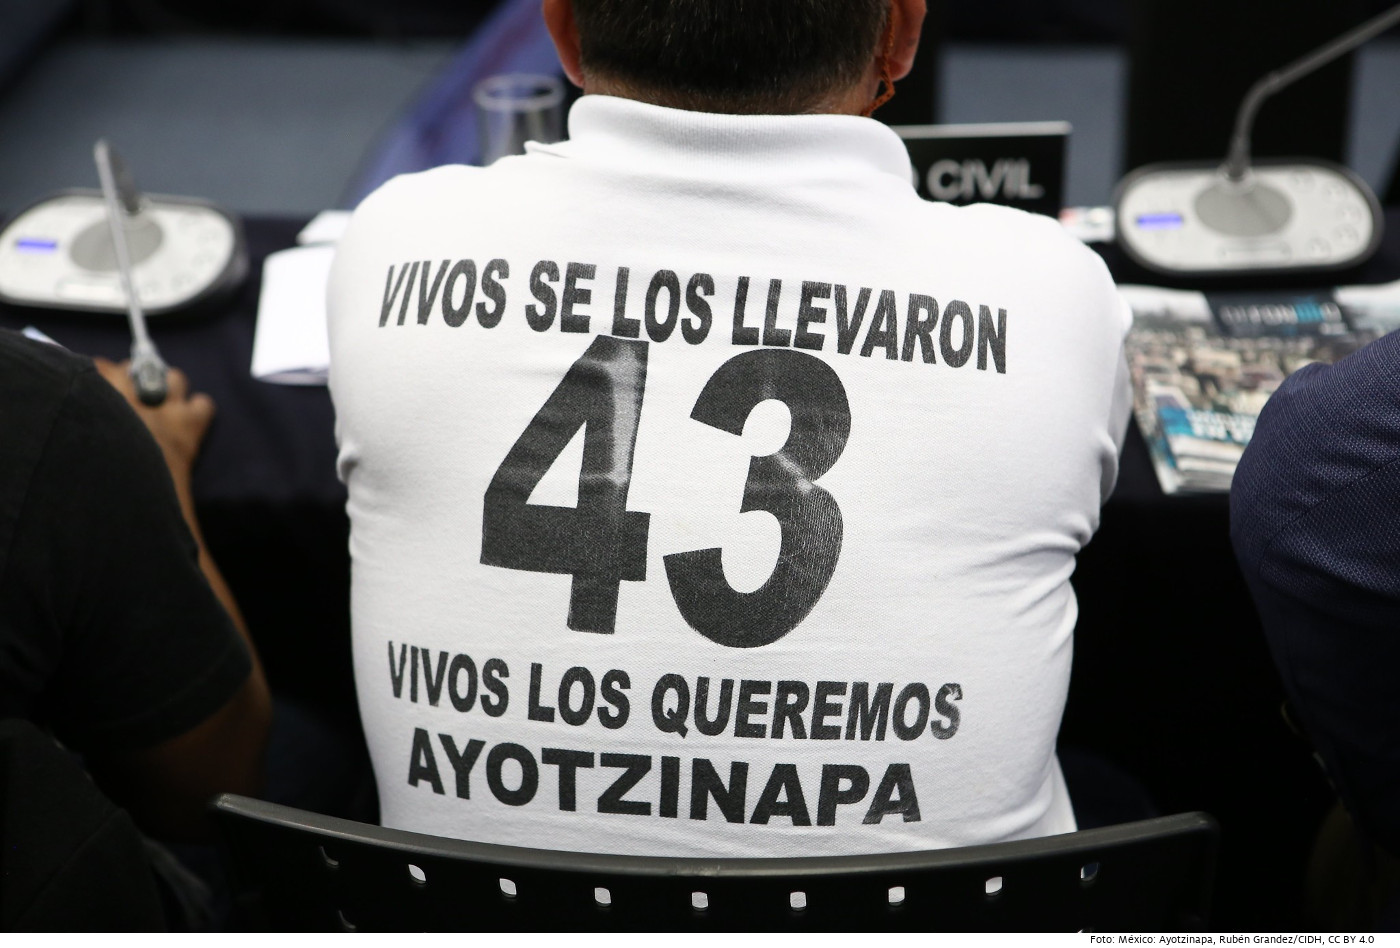 2017 führte die Interamerikanische Kommission für Menschenrechte (CIDH) ein spezielles Follow-up-Verfahren für den Ayotzinapa-Fall durch. Foto (Symbolbild): México: Ayotzinapa, Rubén Grandez/CIDH, CC BY 4.0